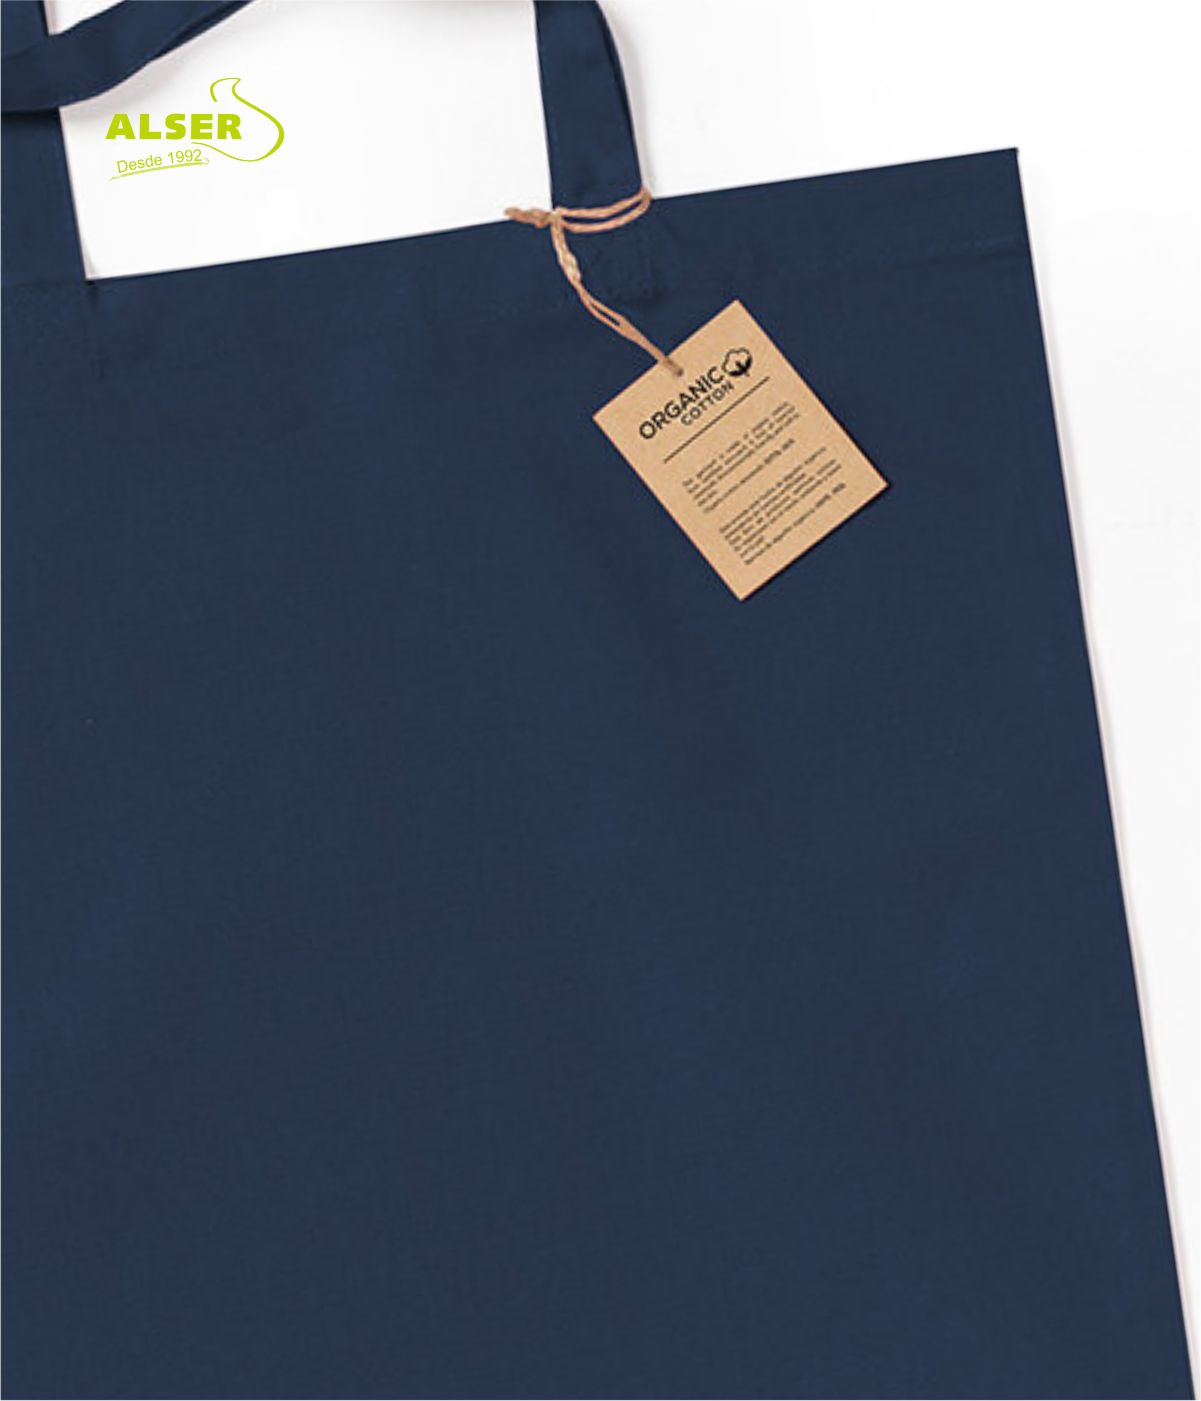 Bolsa algodon organico detalle etiqueta